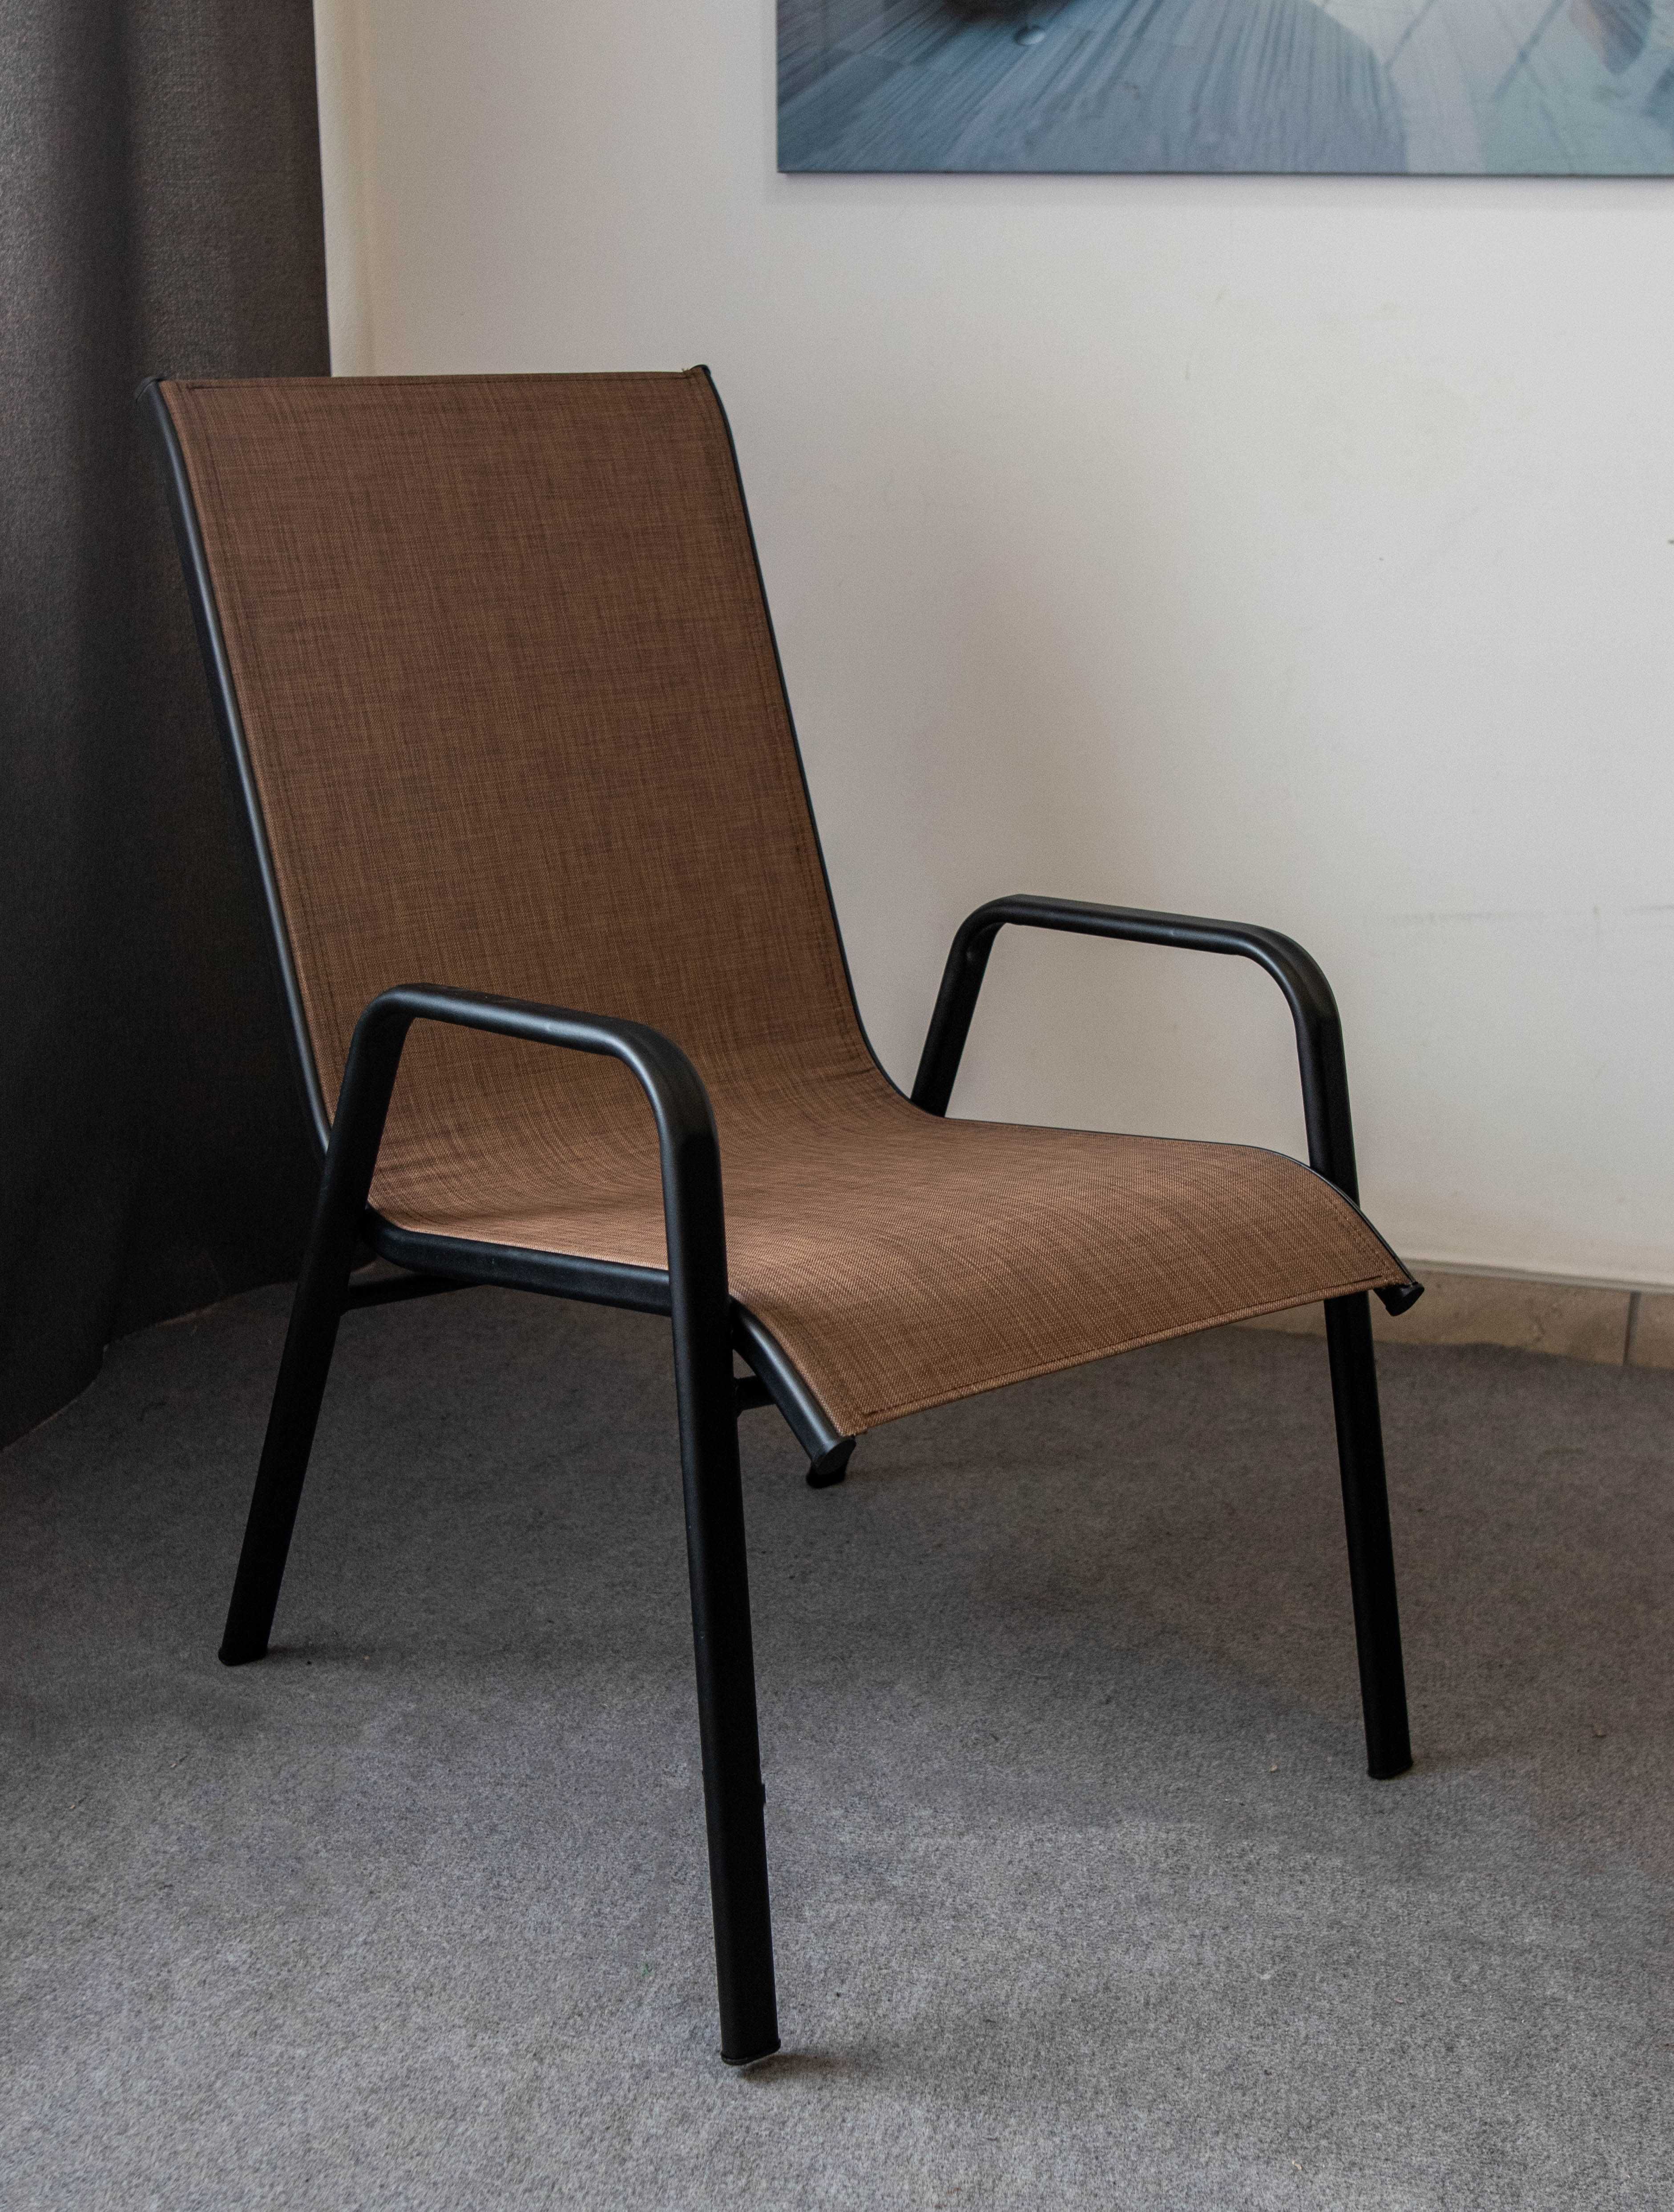 Садовый Комплект Мебели . Кухонный стол и кресла стулья из текстилена